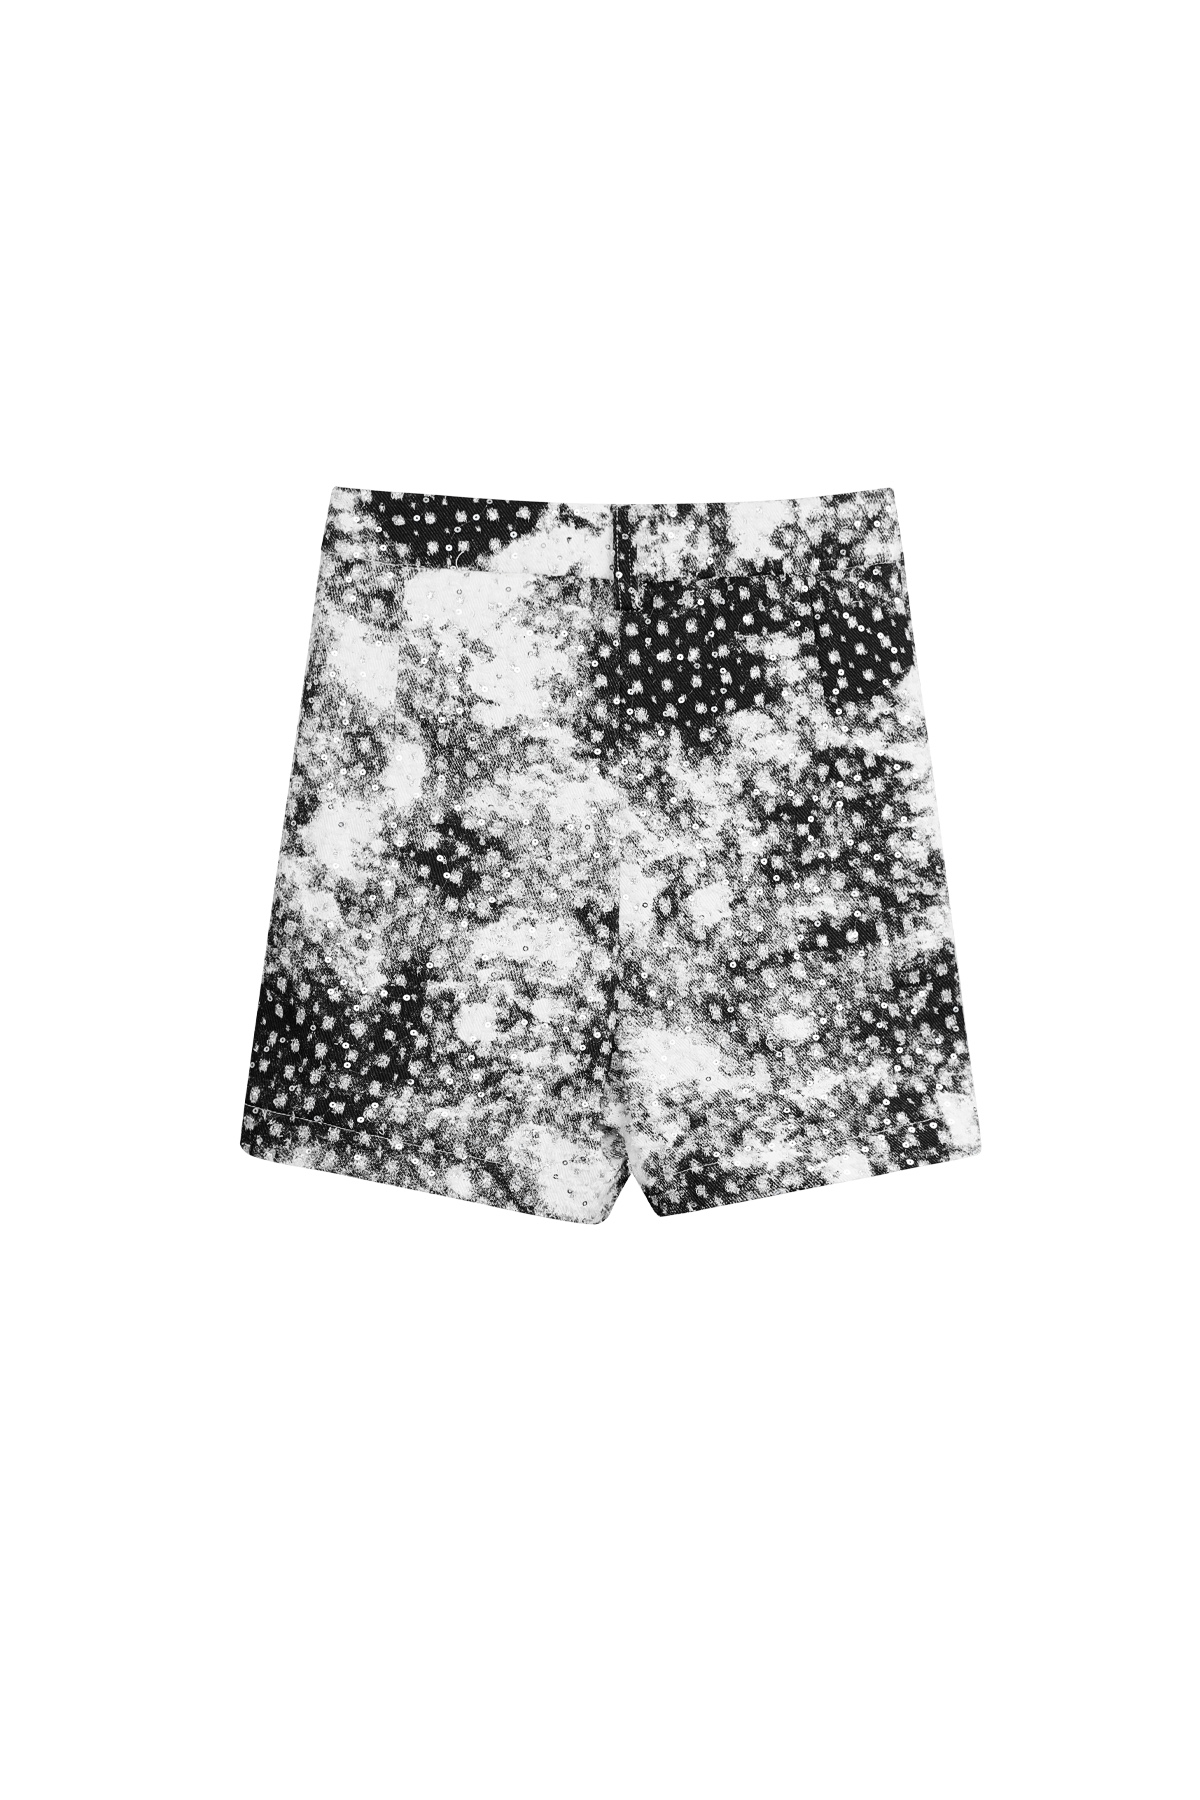 Macchie corte con glitter: bianco e nero h5 Immagine8